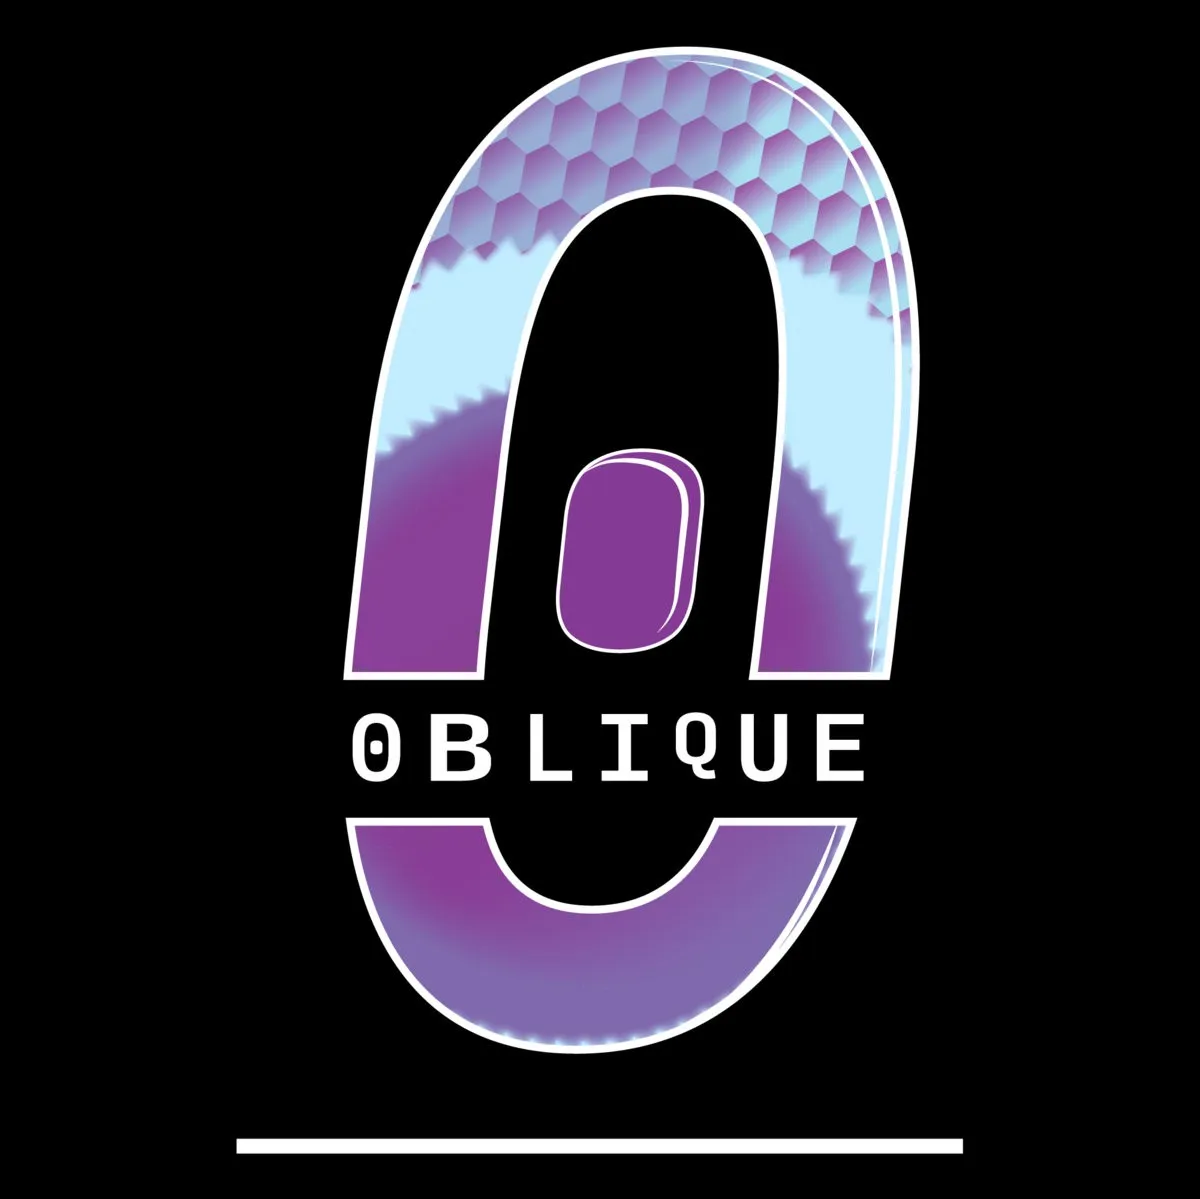 Oblique Records